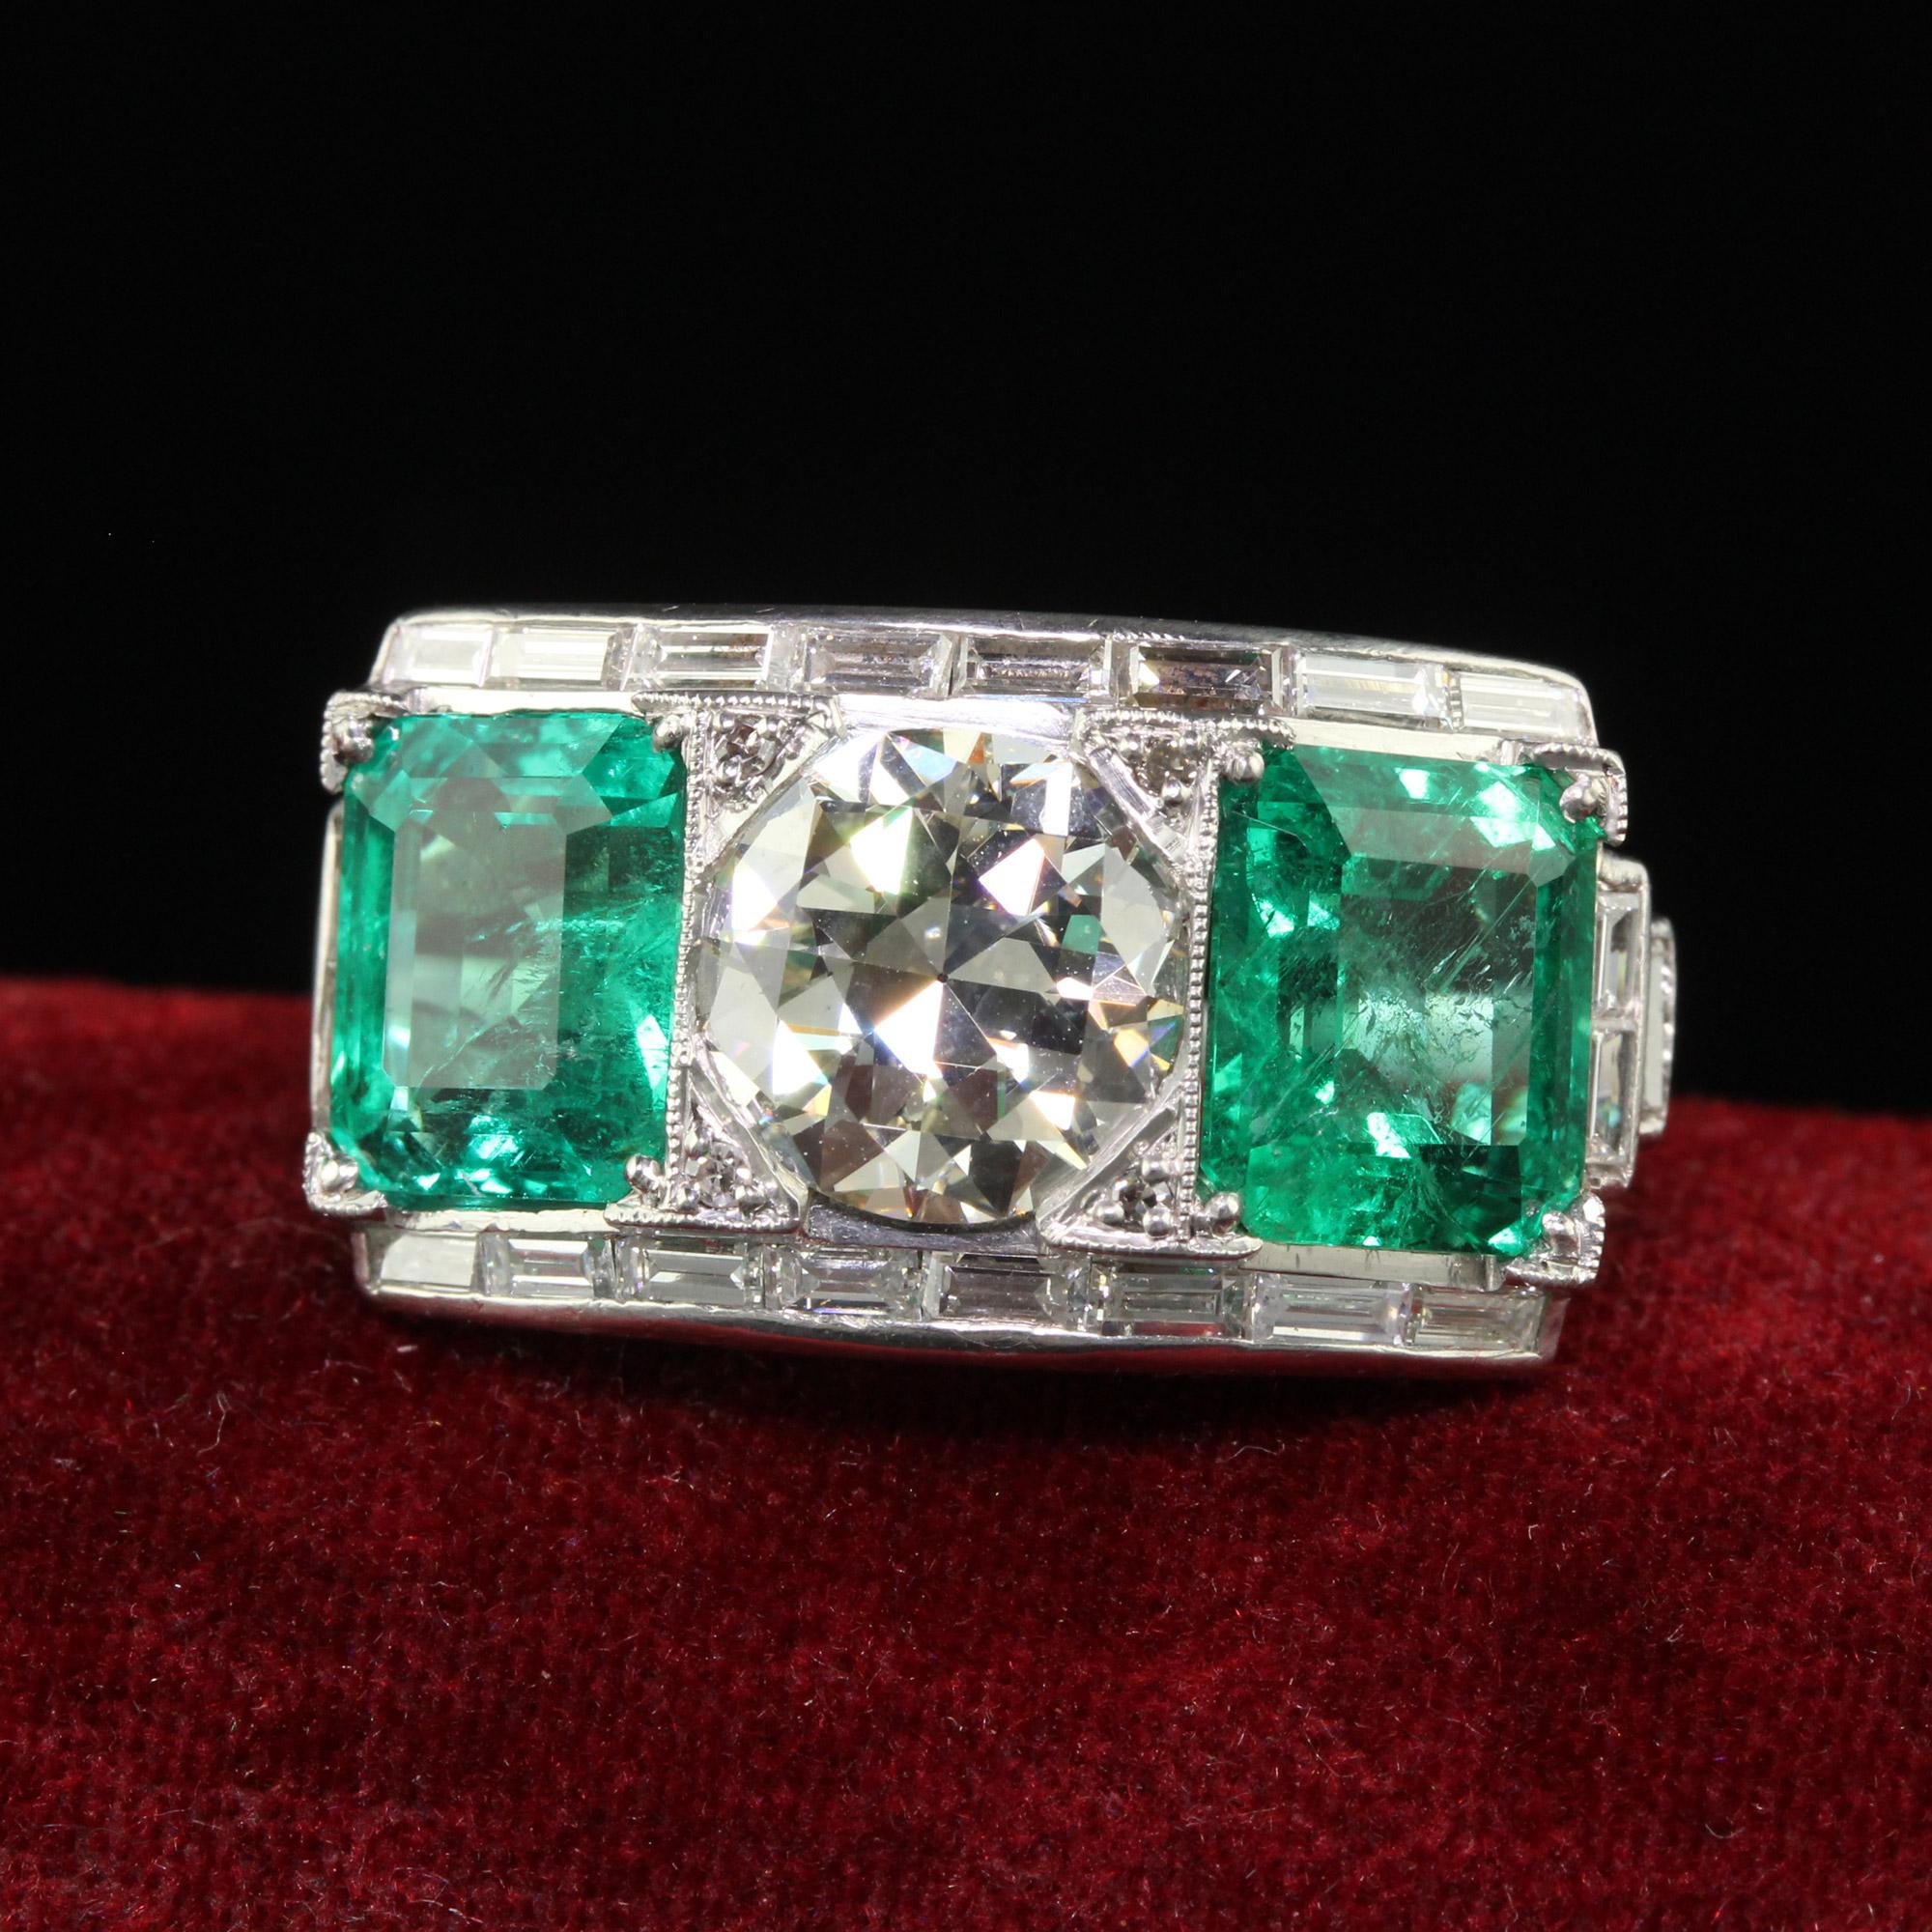 Schöner Vintage Retro Platin Old Cut Diamant und Smaragd Drei Stein Ring - GIA/AGL. Dieser unglaubliche Retro-Ring mit drei Steinen ist aus Platin gefertigt. Im oberen Teil des Rings befindet sich ein wunderschöner Diamant im Übergangsschliff mit